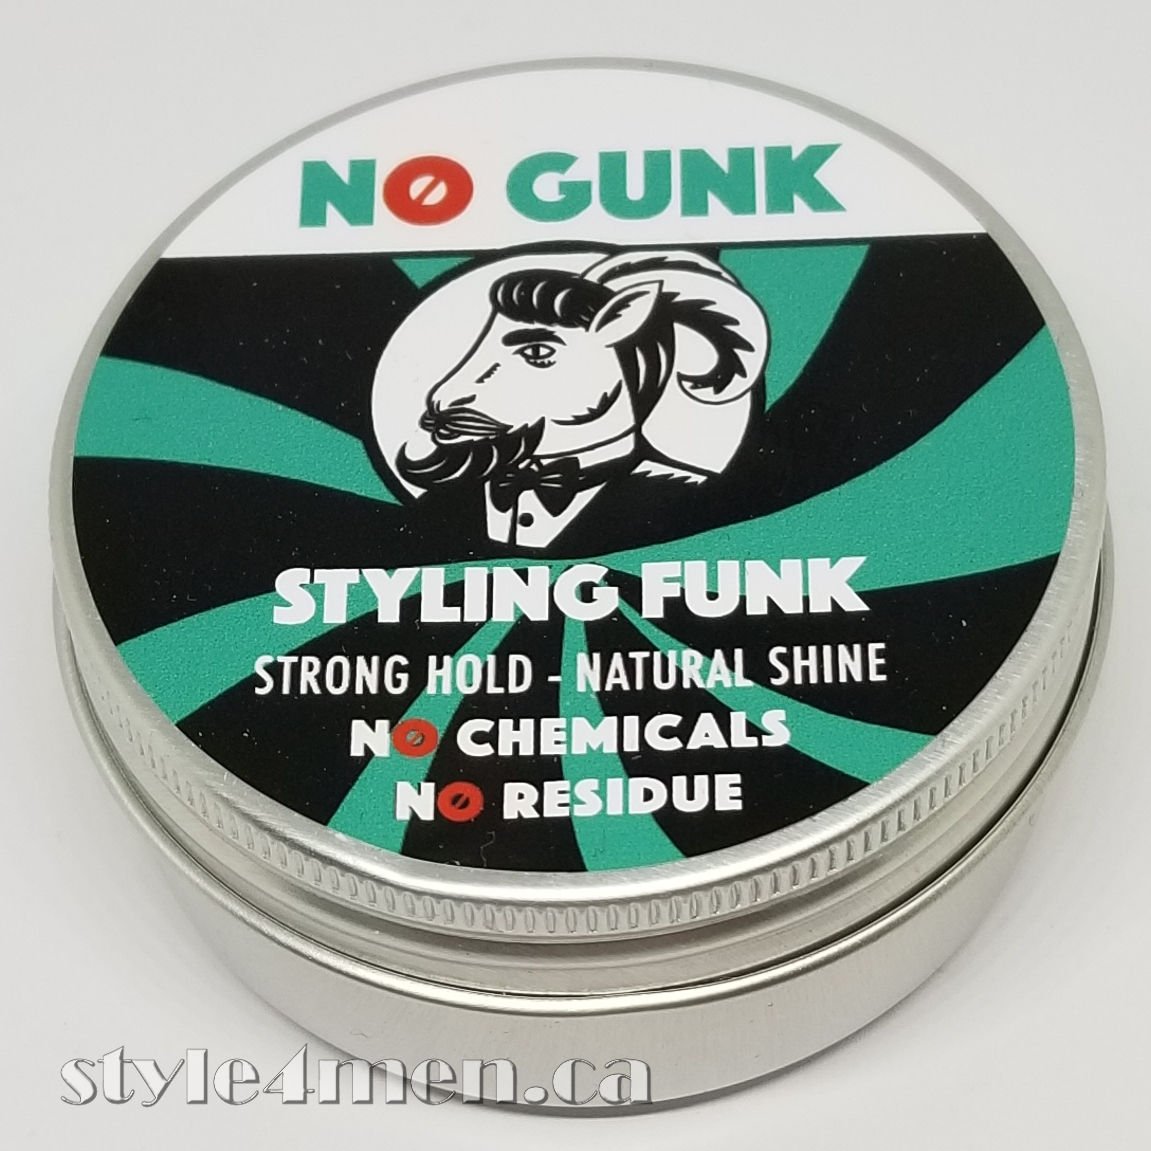 No Gunk – A natural pomade option